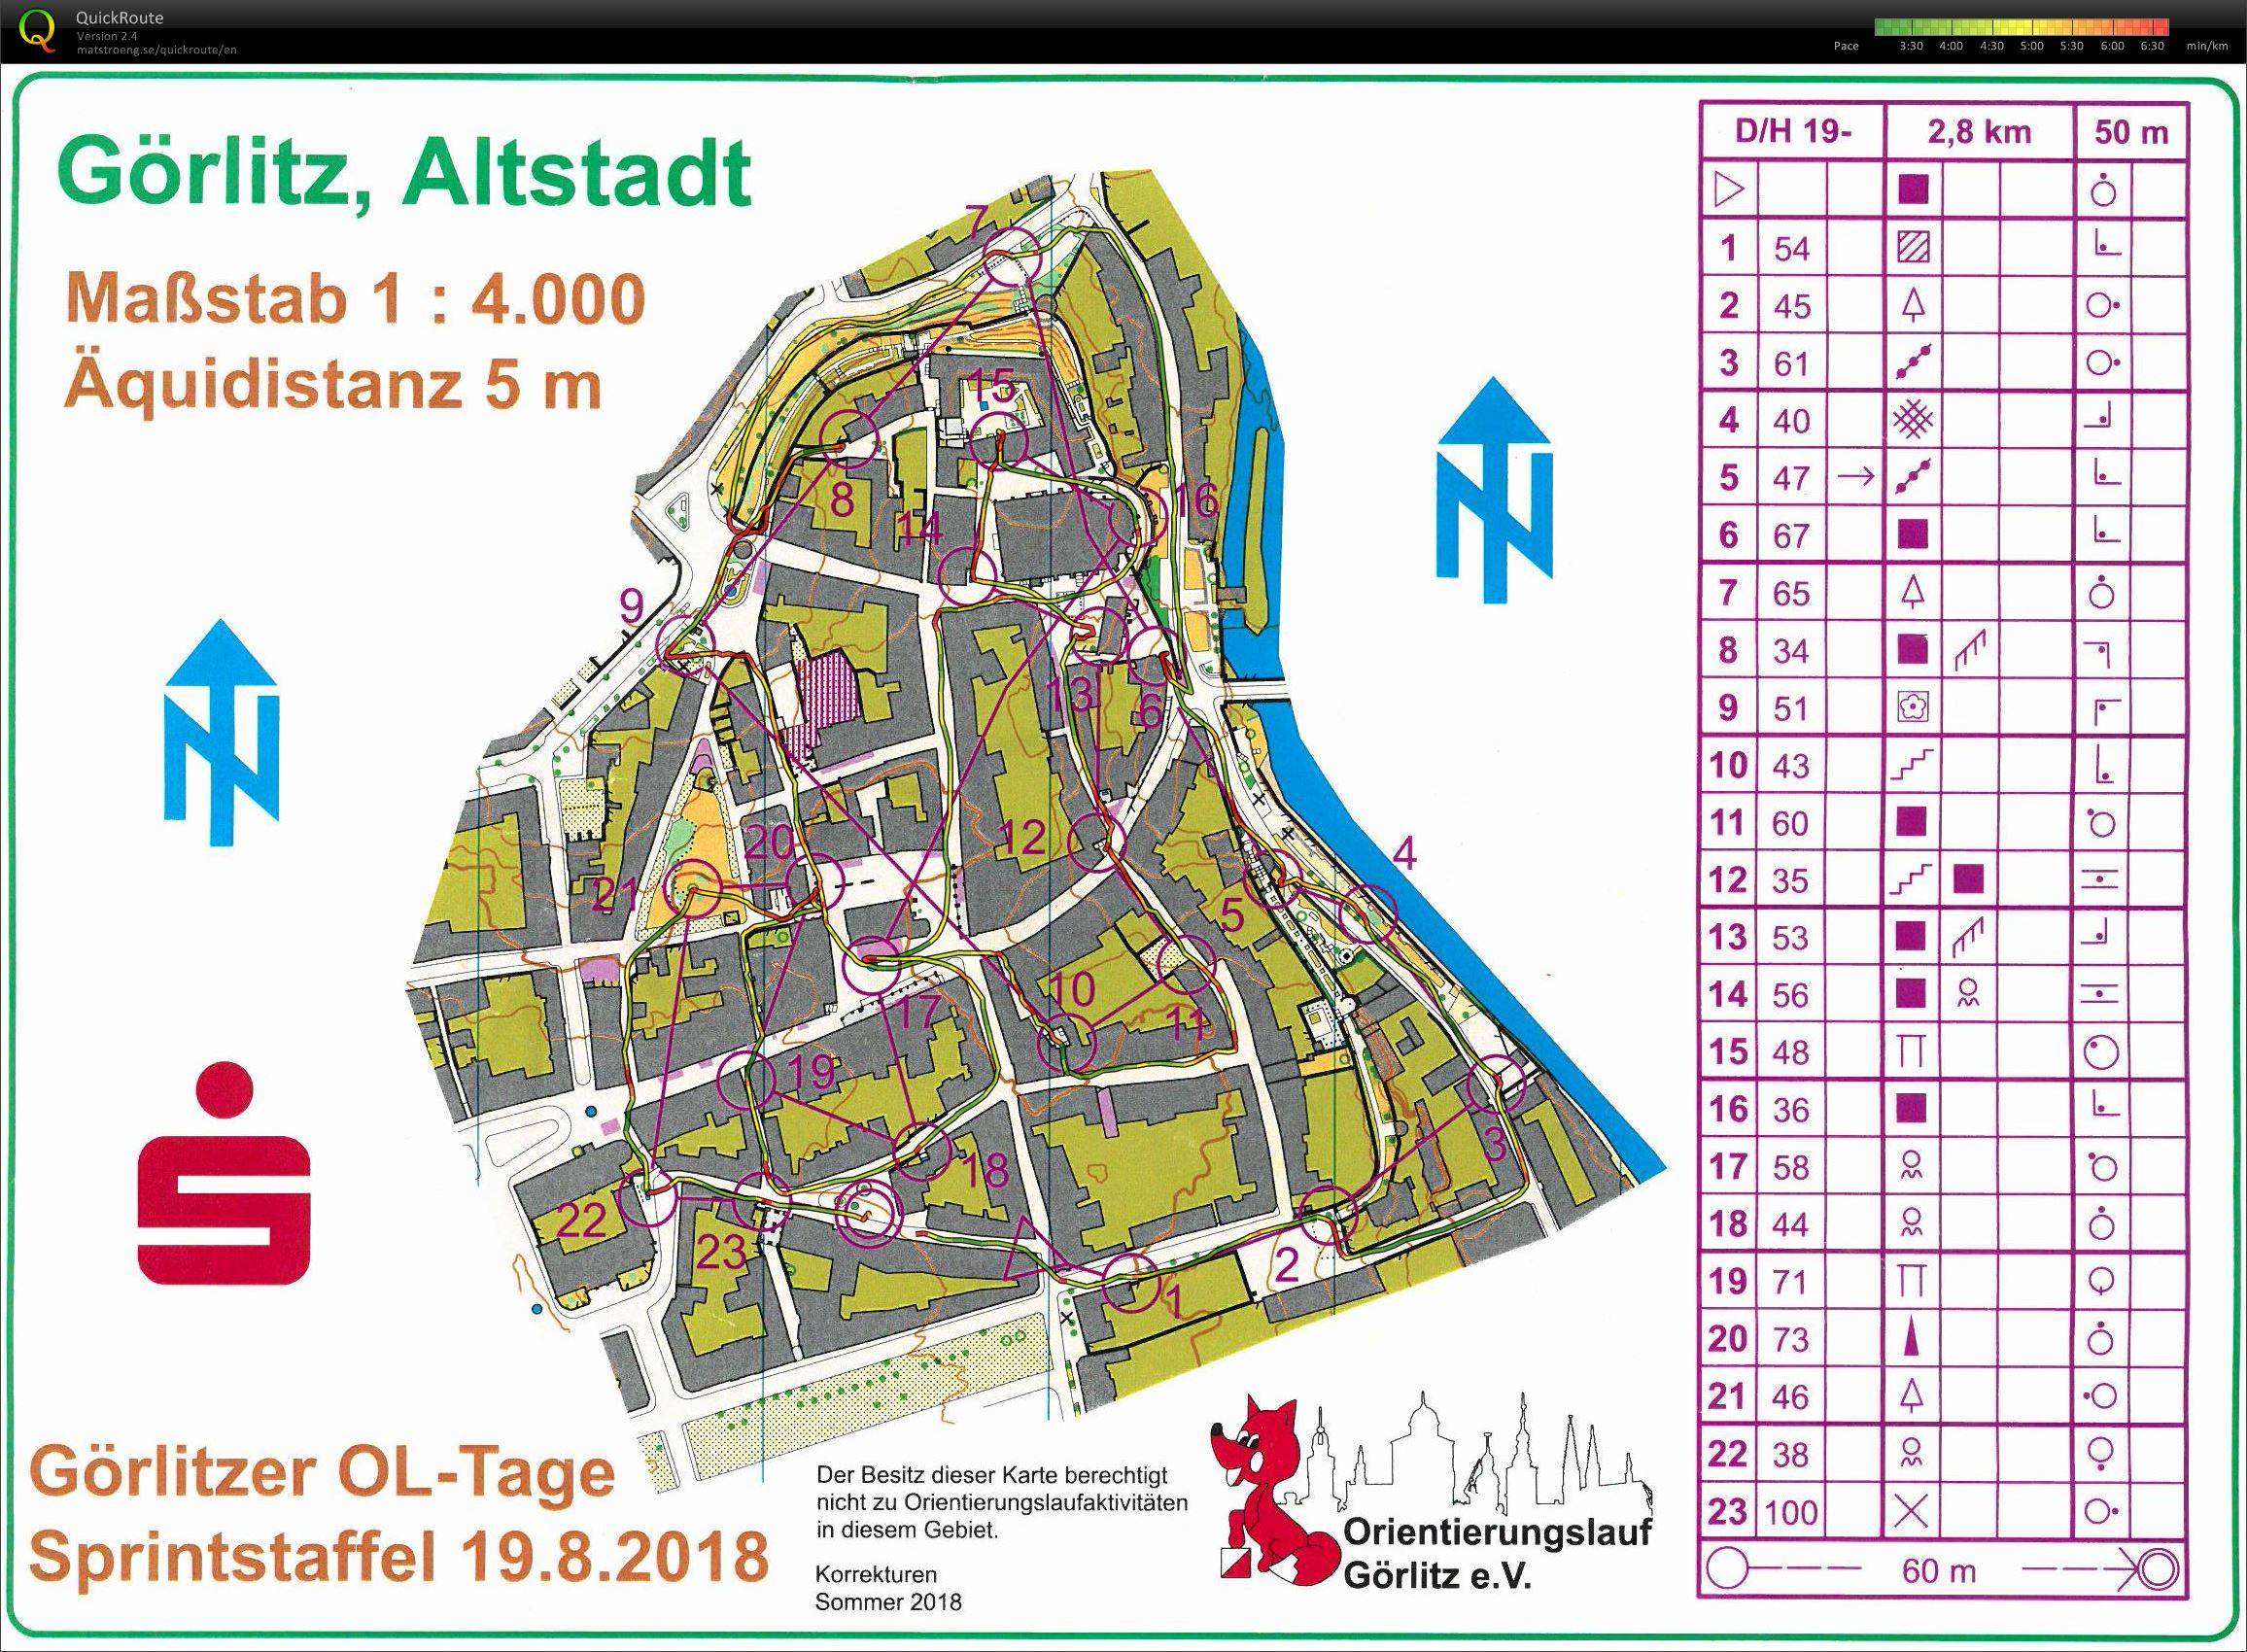 Mixed-Sprintstaffel in der Altstadt Görlitz (19/08/2018)